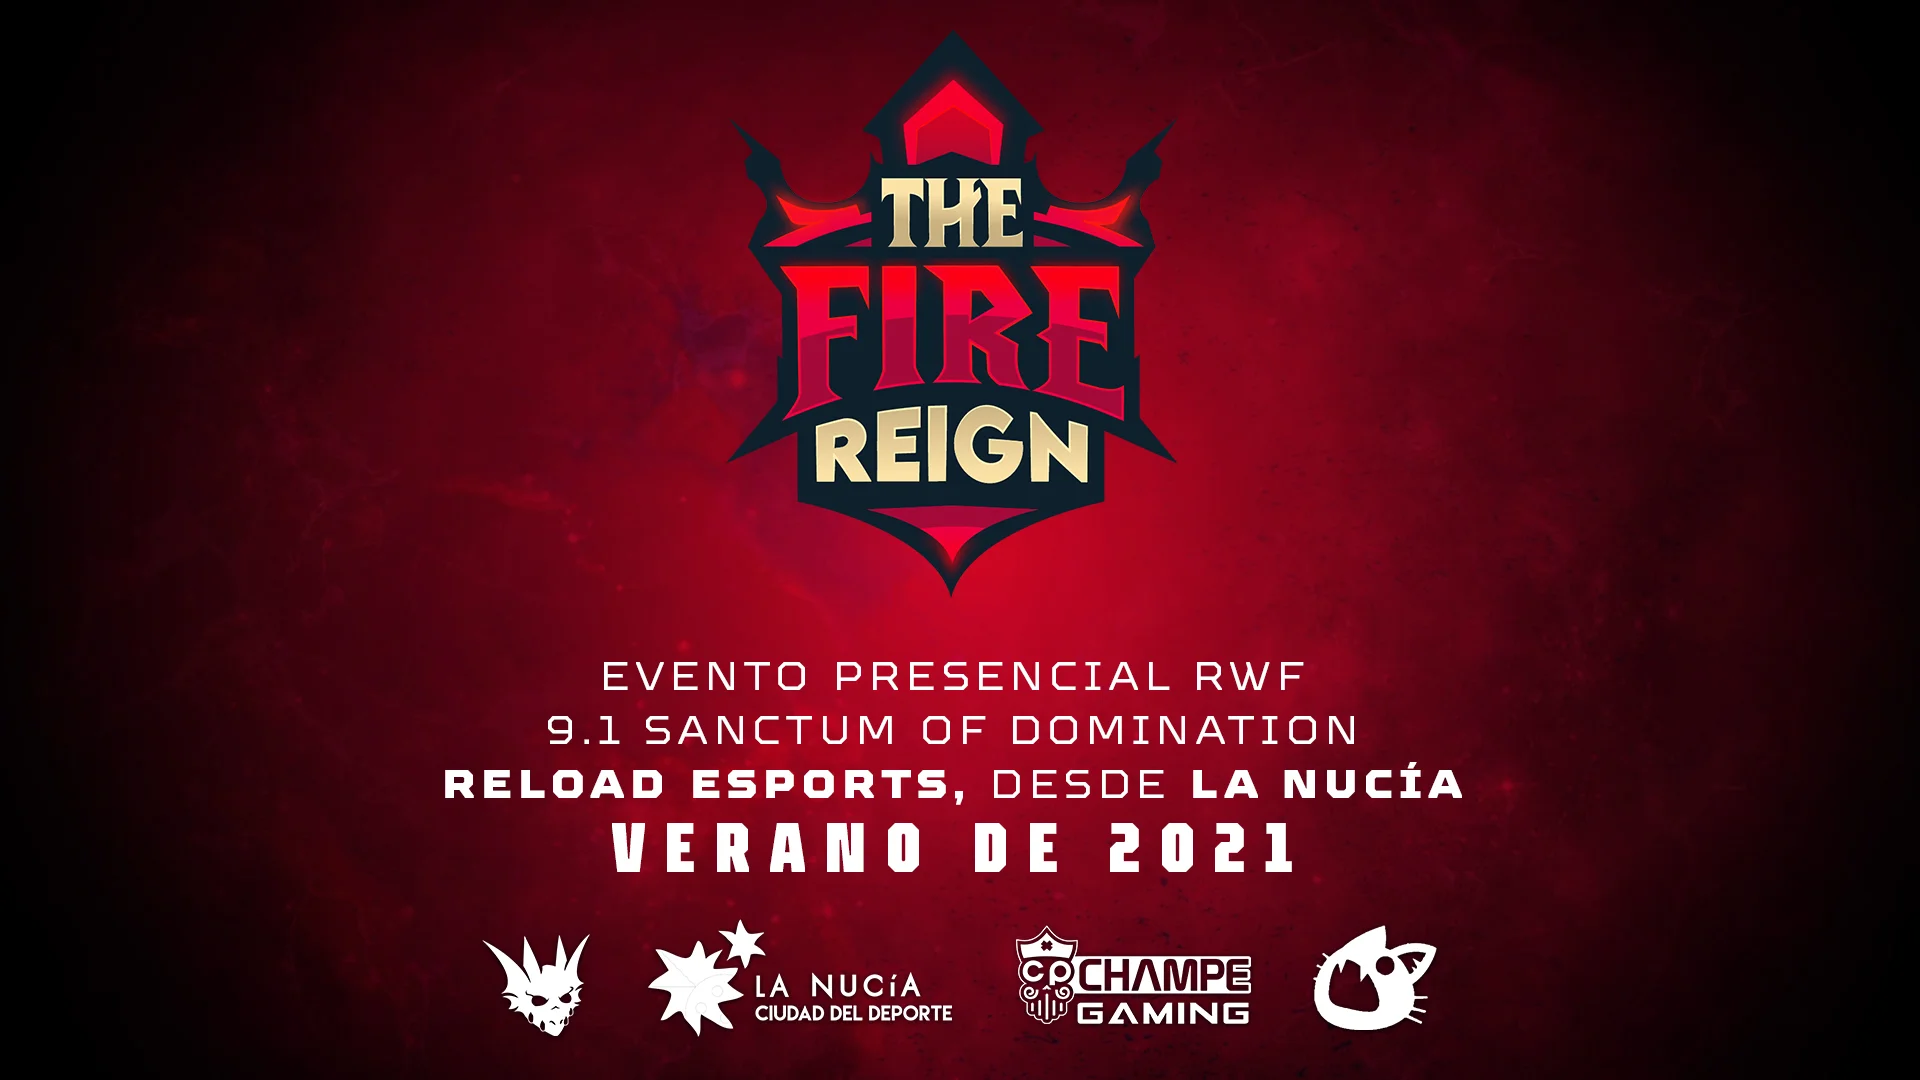 The Fire Reign – La primera competición presencial de WoW en España